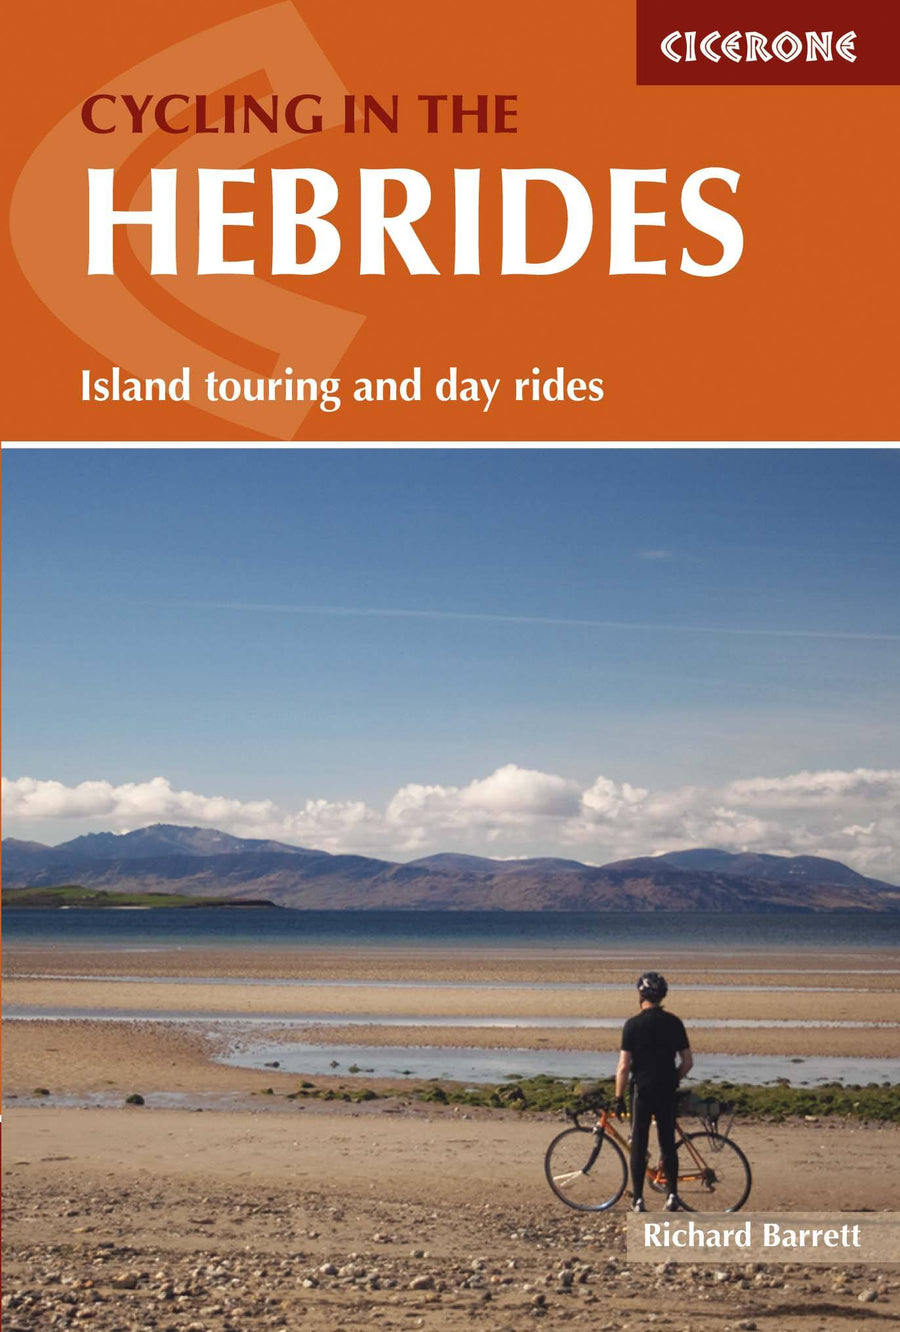 Guide vélo (en anglais) - Hebrides cycling: island touring & day rides | Cicerone guide vélo Cicerone 